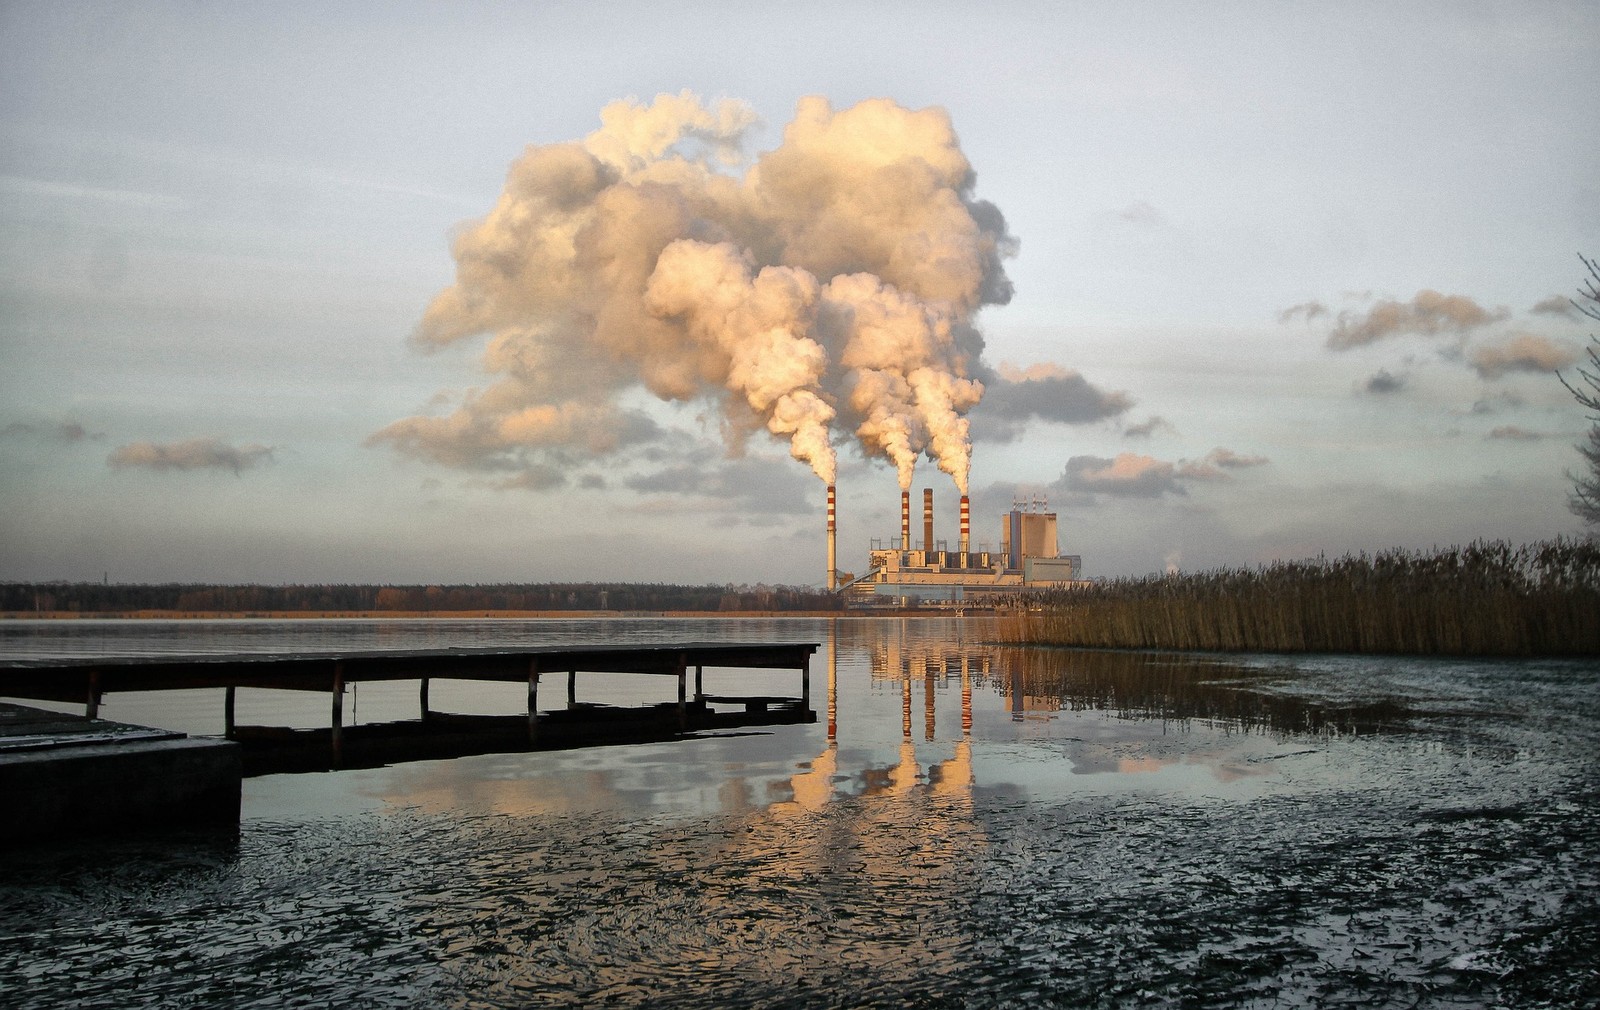 Zdjęcie przykładowej elektrowni w Polsce
